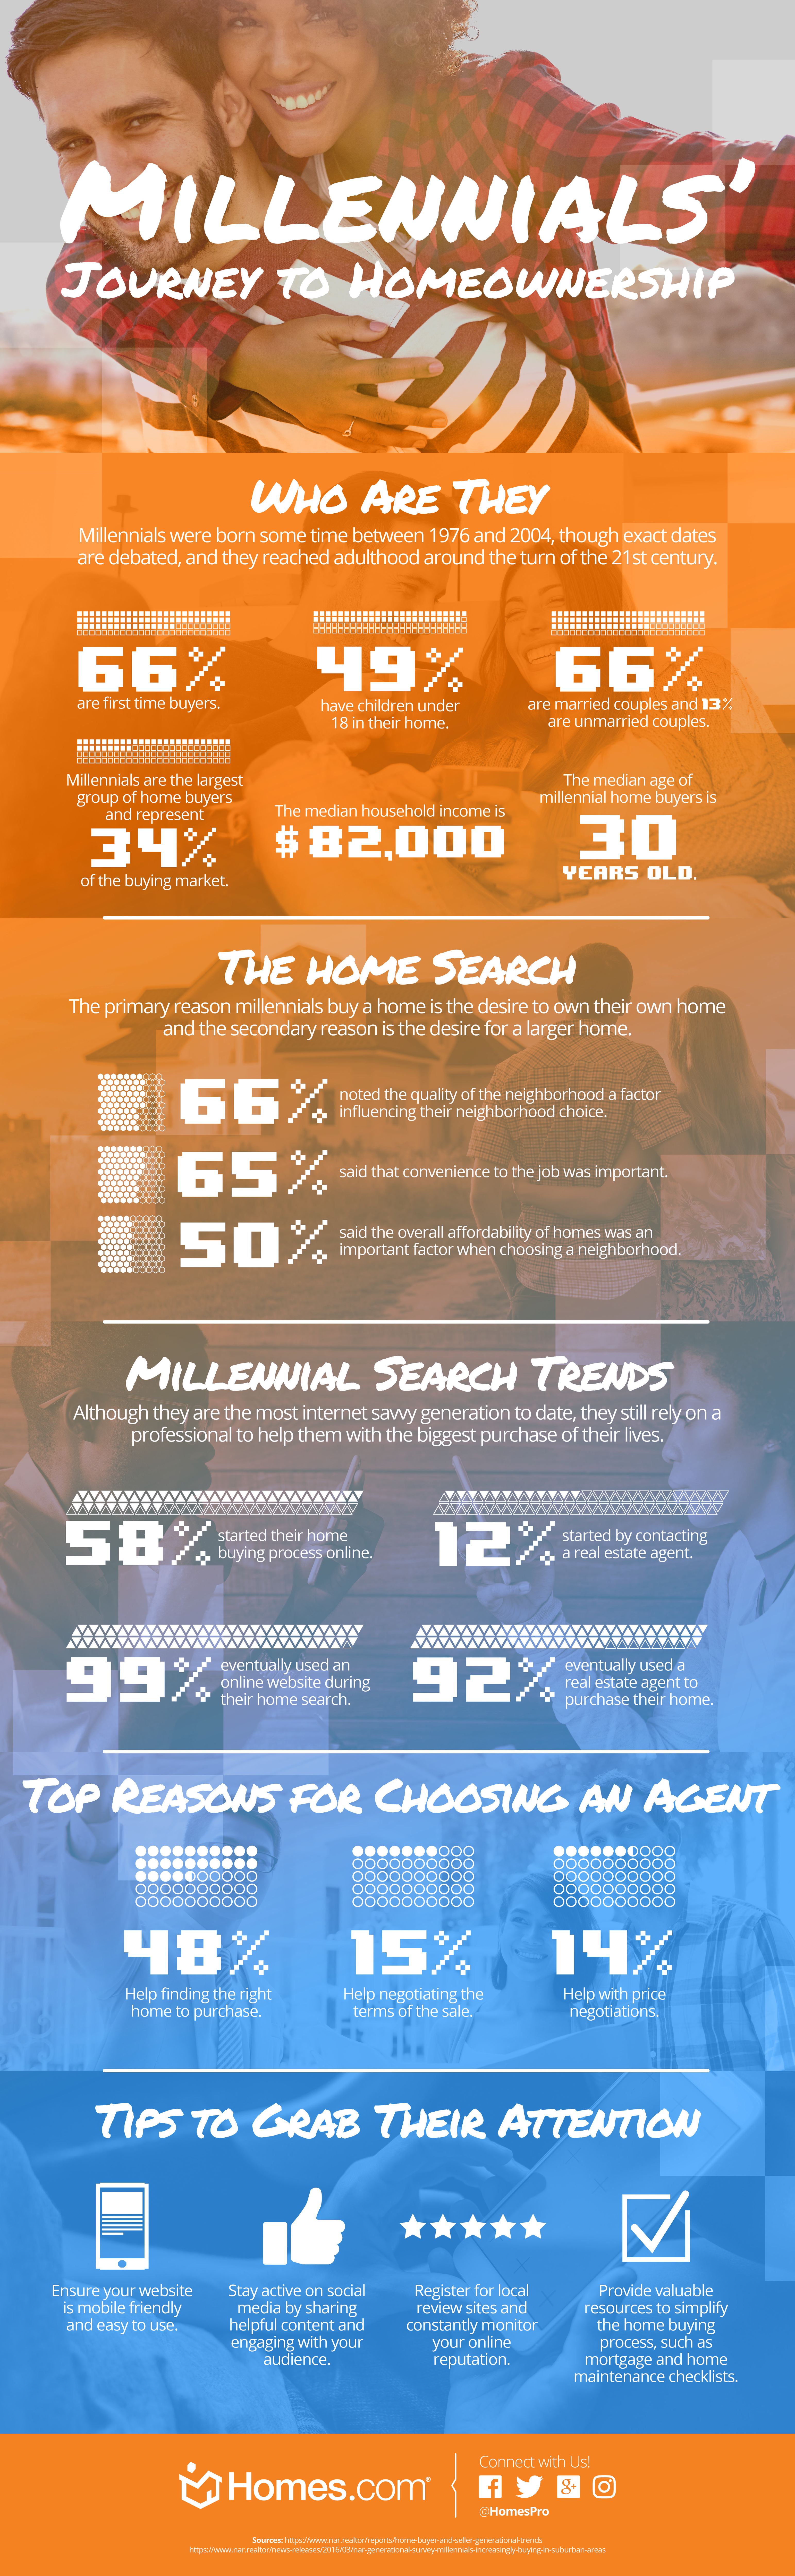 HDC_Millennials_Infographic_2791